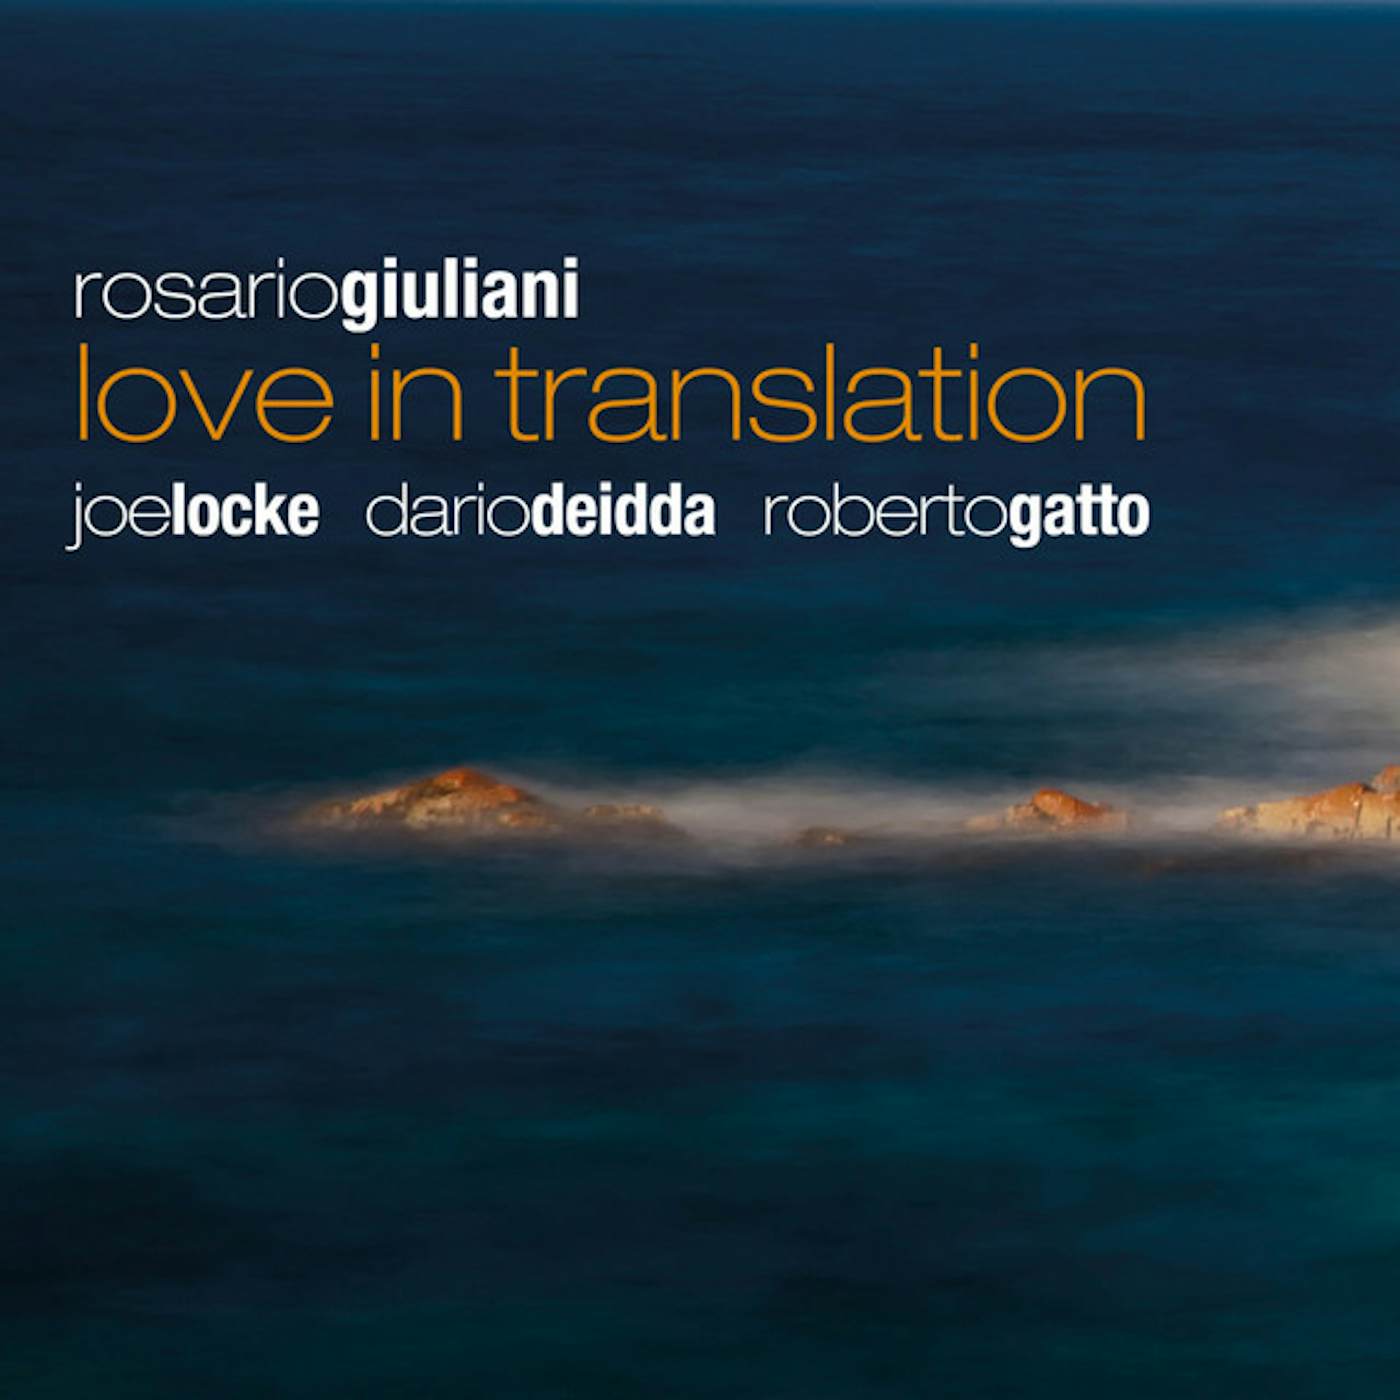 Rosario Giuliani LOVE IN TRANSLATION CD